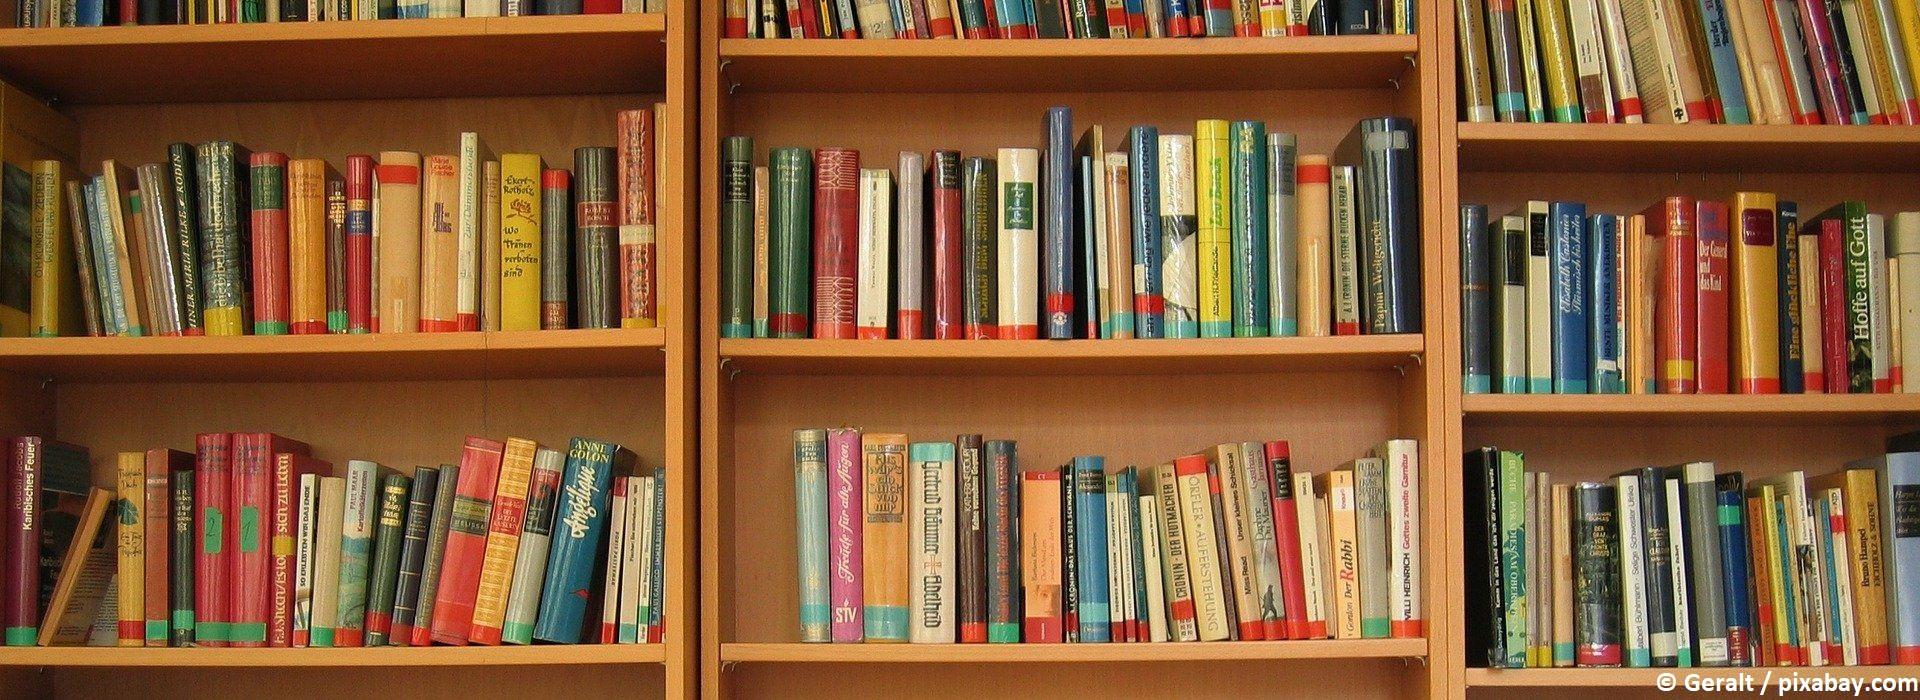 Bücher in einer Bücherei vom Geralt by pixabay